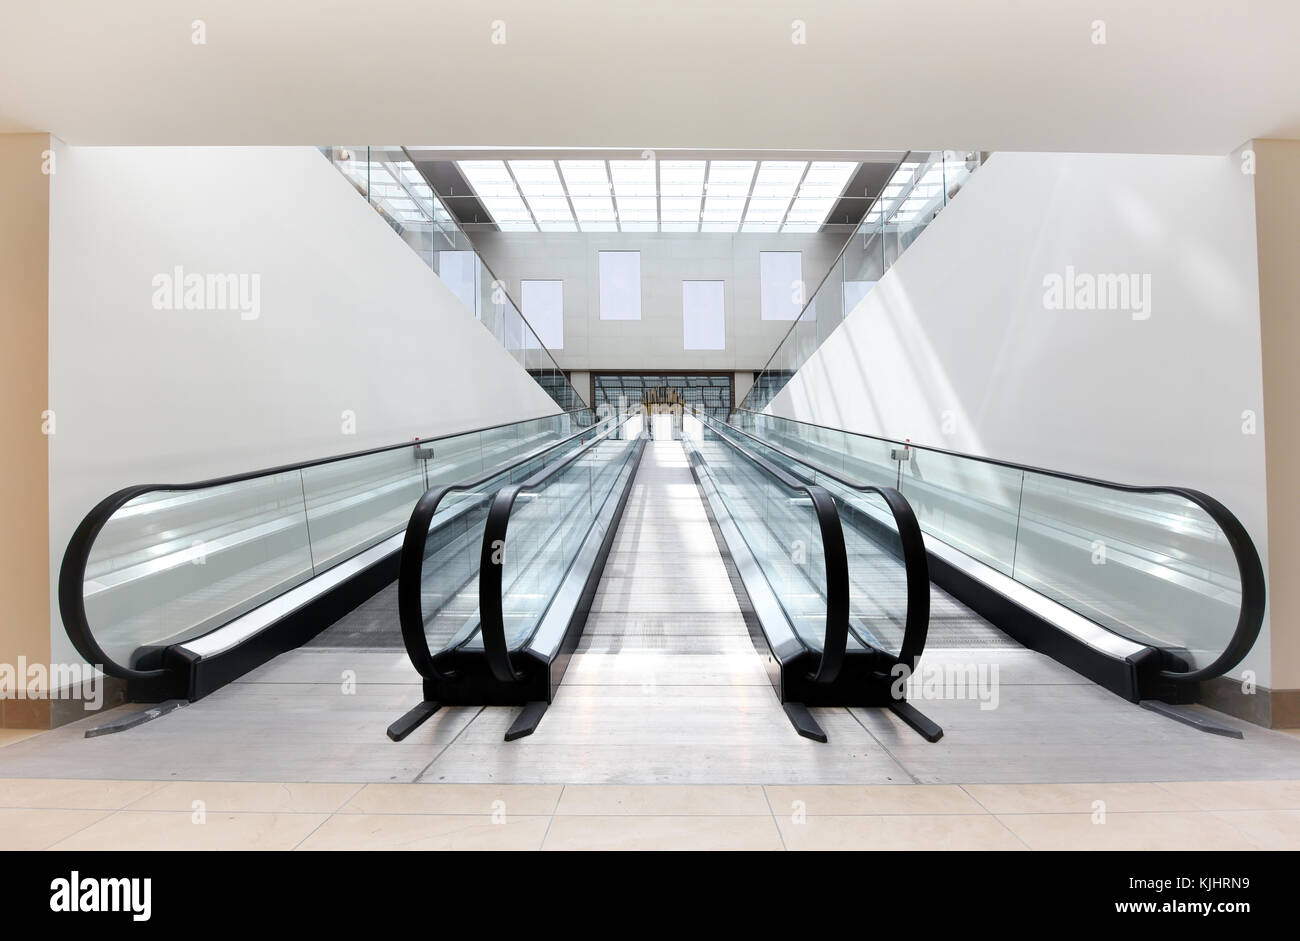 Deux escaliers mécaniques vides, l'un ascendant et un descendant, côte à côte dans un édifice commercial bien éclairées. Banque D'Images